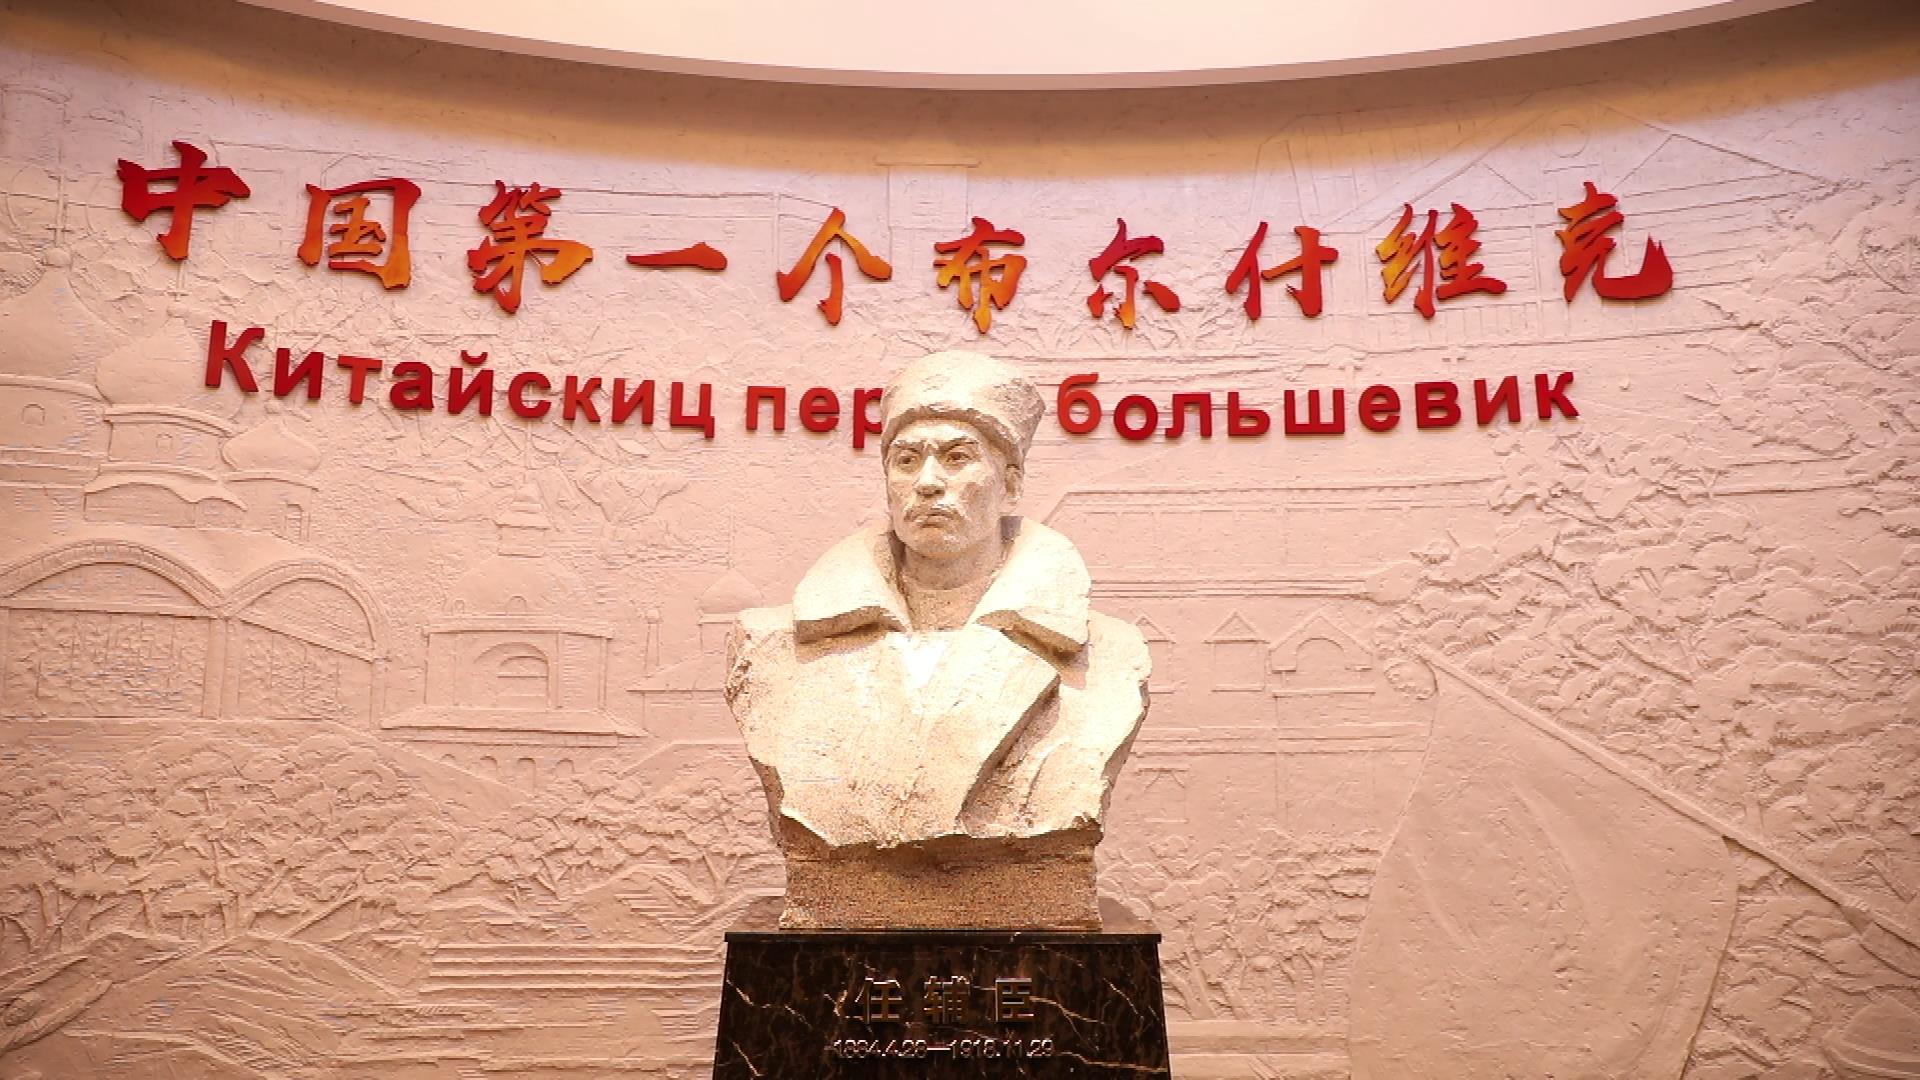 参考消息独家高擎十月革命旗帜的中国旗手记中国第一个布尔什维克